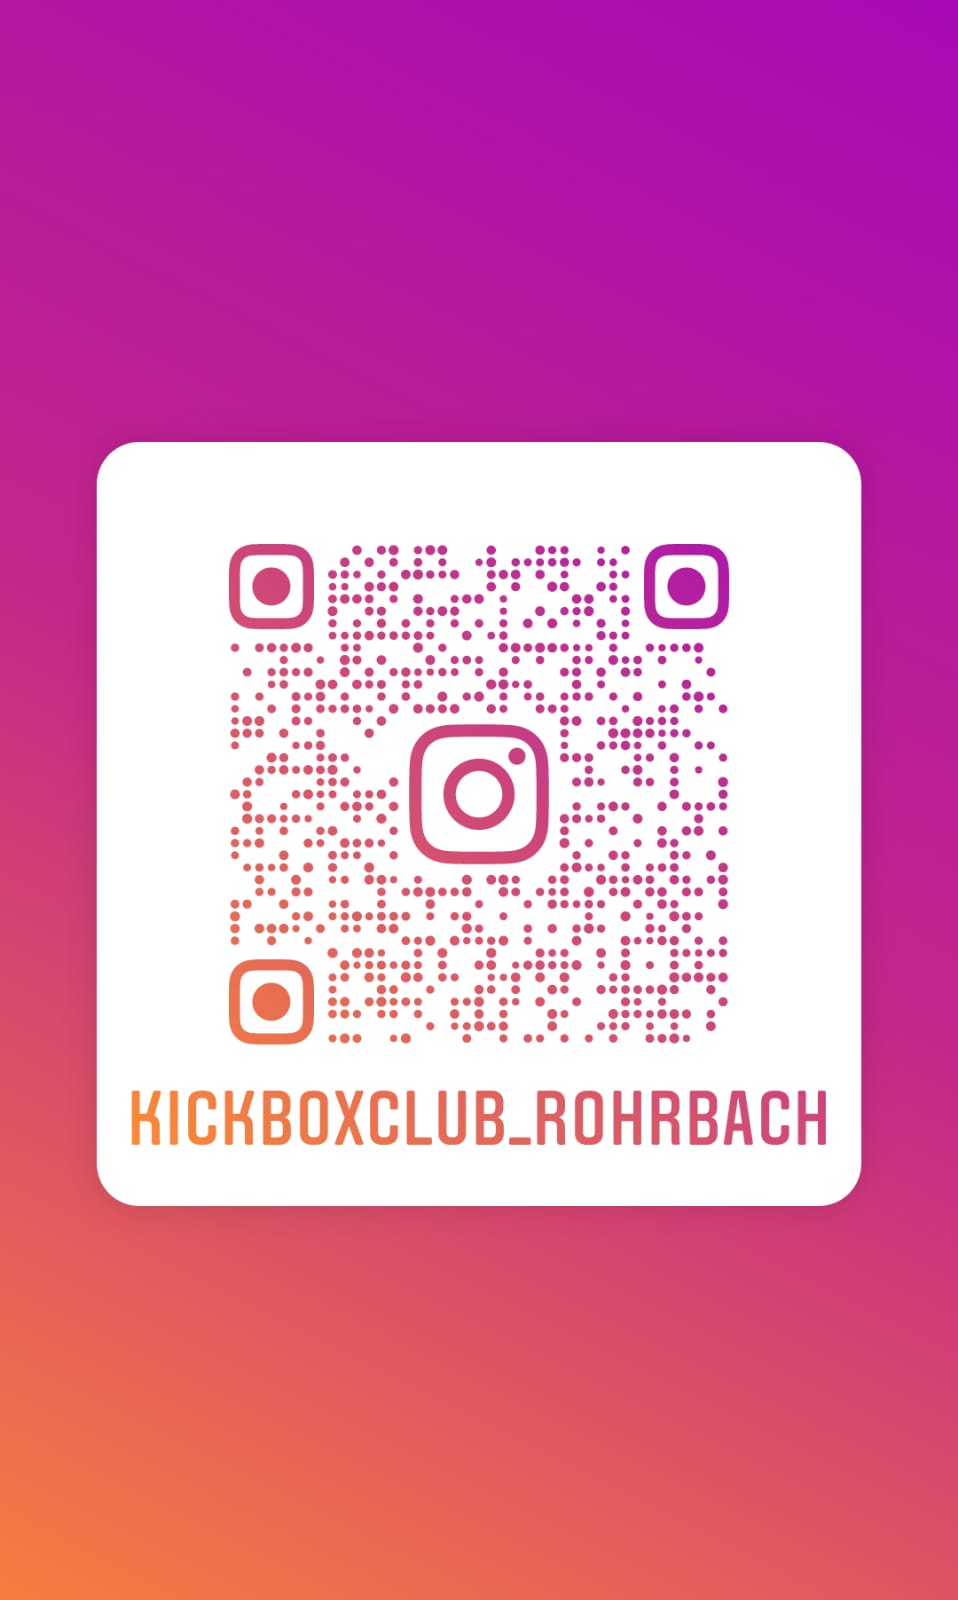 Instagram Kickboxclub Rohrbach